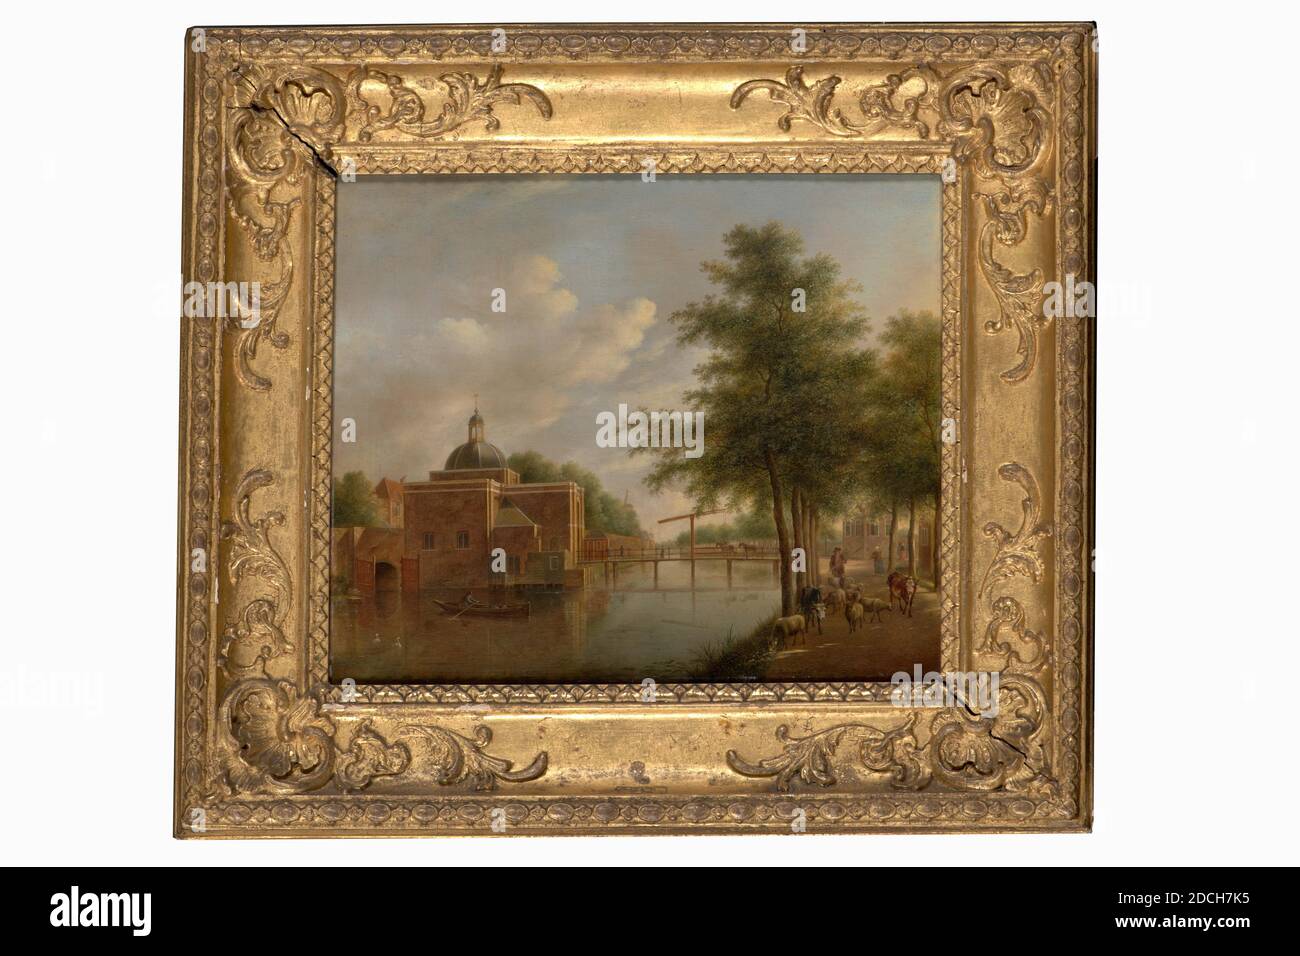 Peinture, Johannes Janson, 1774, Signature avant, en bas à droite, sous le troupeau: J. Janson f, panneau, peinture à l'huile, peint, support: 29.7 × 35.3 × 1,8cm 297 × 353 × 18mm, avec cadre: 46 × 51.7 × 4.5cm 460 × 517 × 45mm, vache, ramer, mouton, cygne, canal, paysage urbain, porte de la ville, homme, cheval, pont, Leiden, peinture représentant une porte de la ville de Leiden : le Koepoort et les canaux vus de l'ouest. À l'extrême gauche, vous pouvez voir les portes d'écluse du Koepoortsgracht, à droite, le portier, les remparts avec le moulin à vent d'Oranjeboom et la tour Wal Autriche. Sur le pont sont trois figures et un Banque D'Images